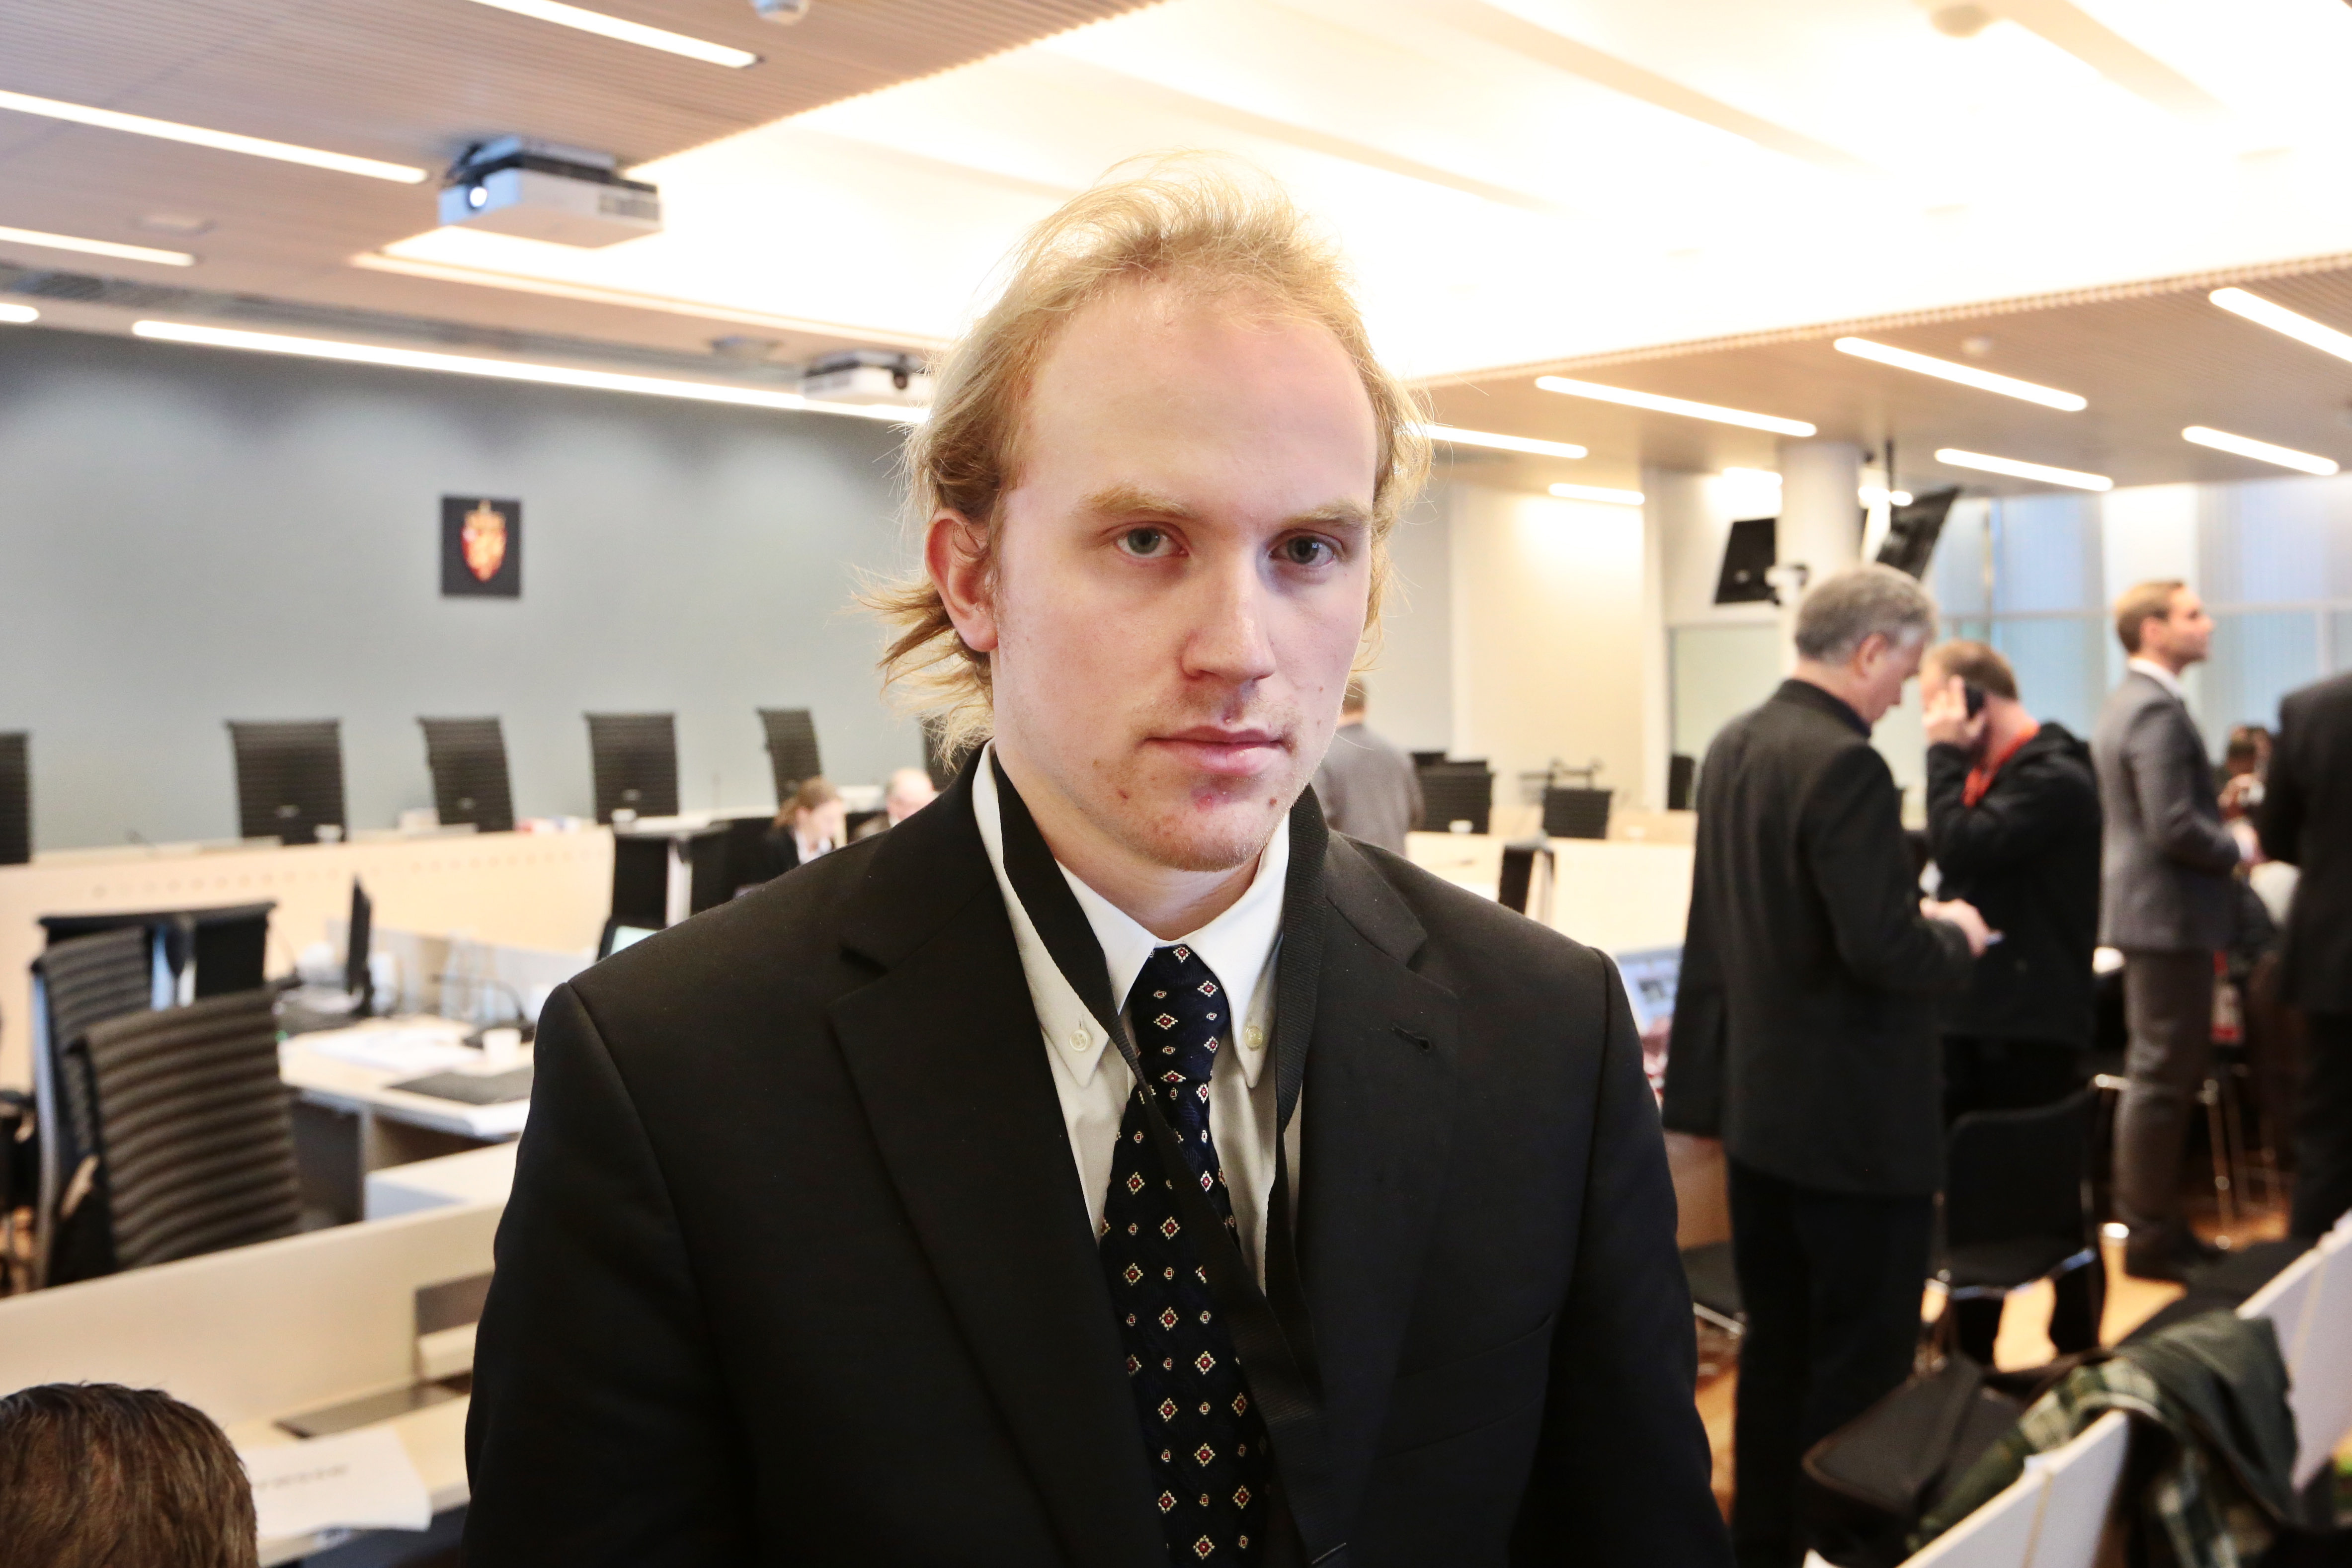 Siste man i vittnesbåset var 20-årige Björn Ihler. Han har varit av ett särskilt intresse för massmördaren och fick sin adress publicerad i form av GPS-kordinater i Breiviks manifesto.